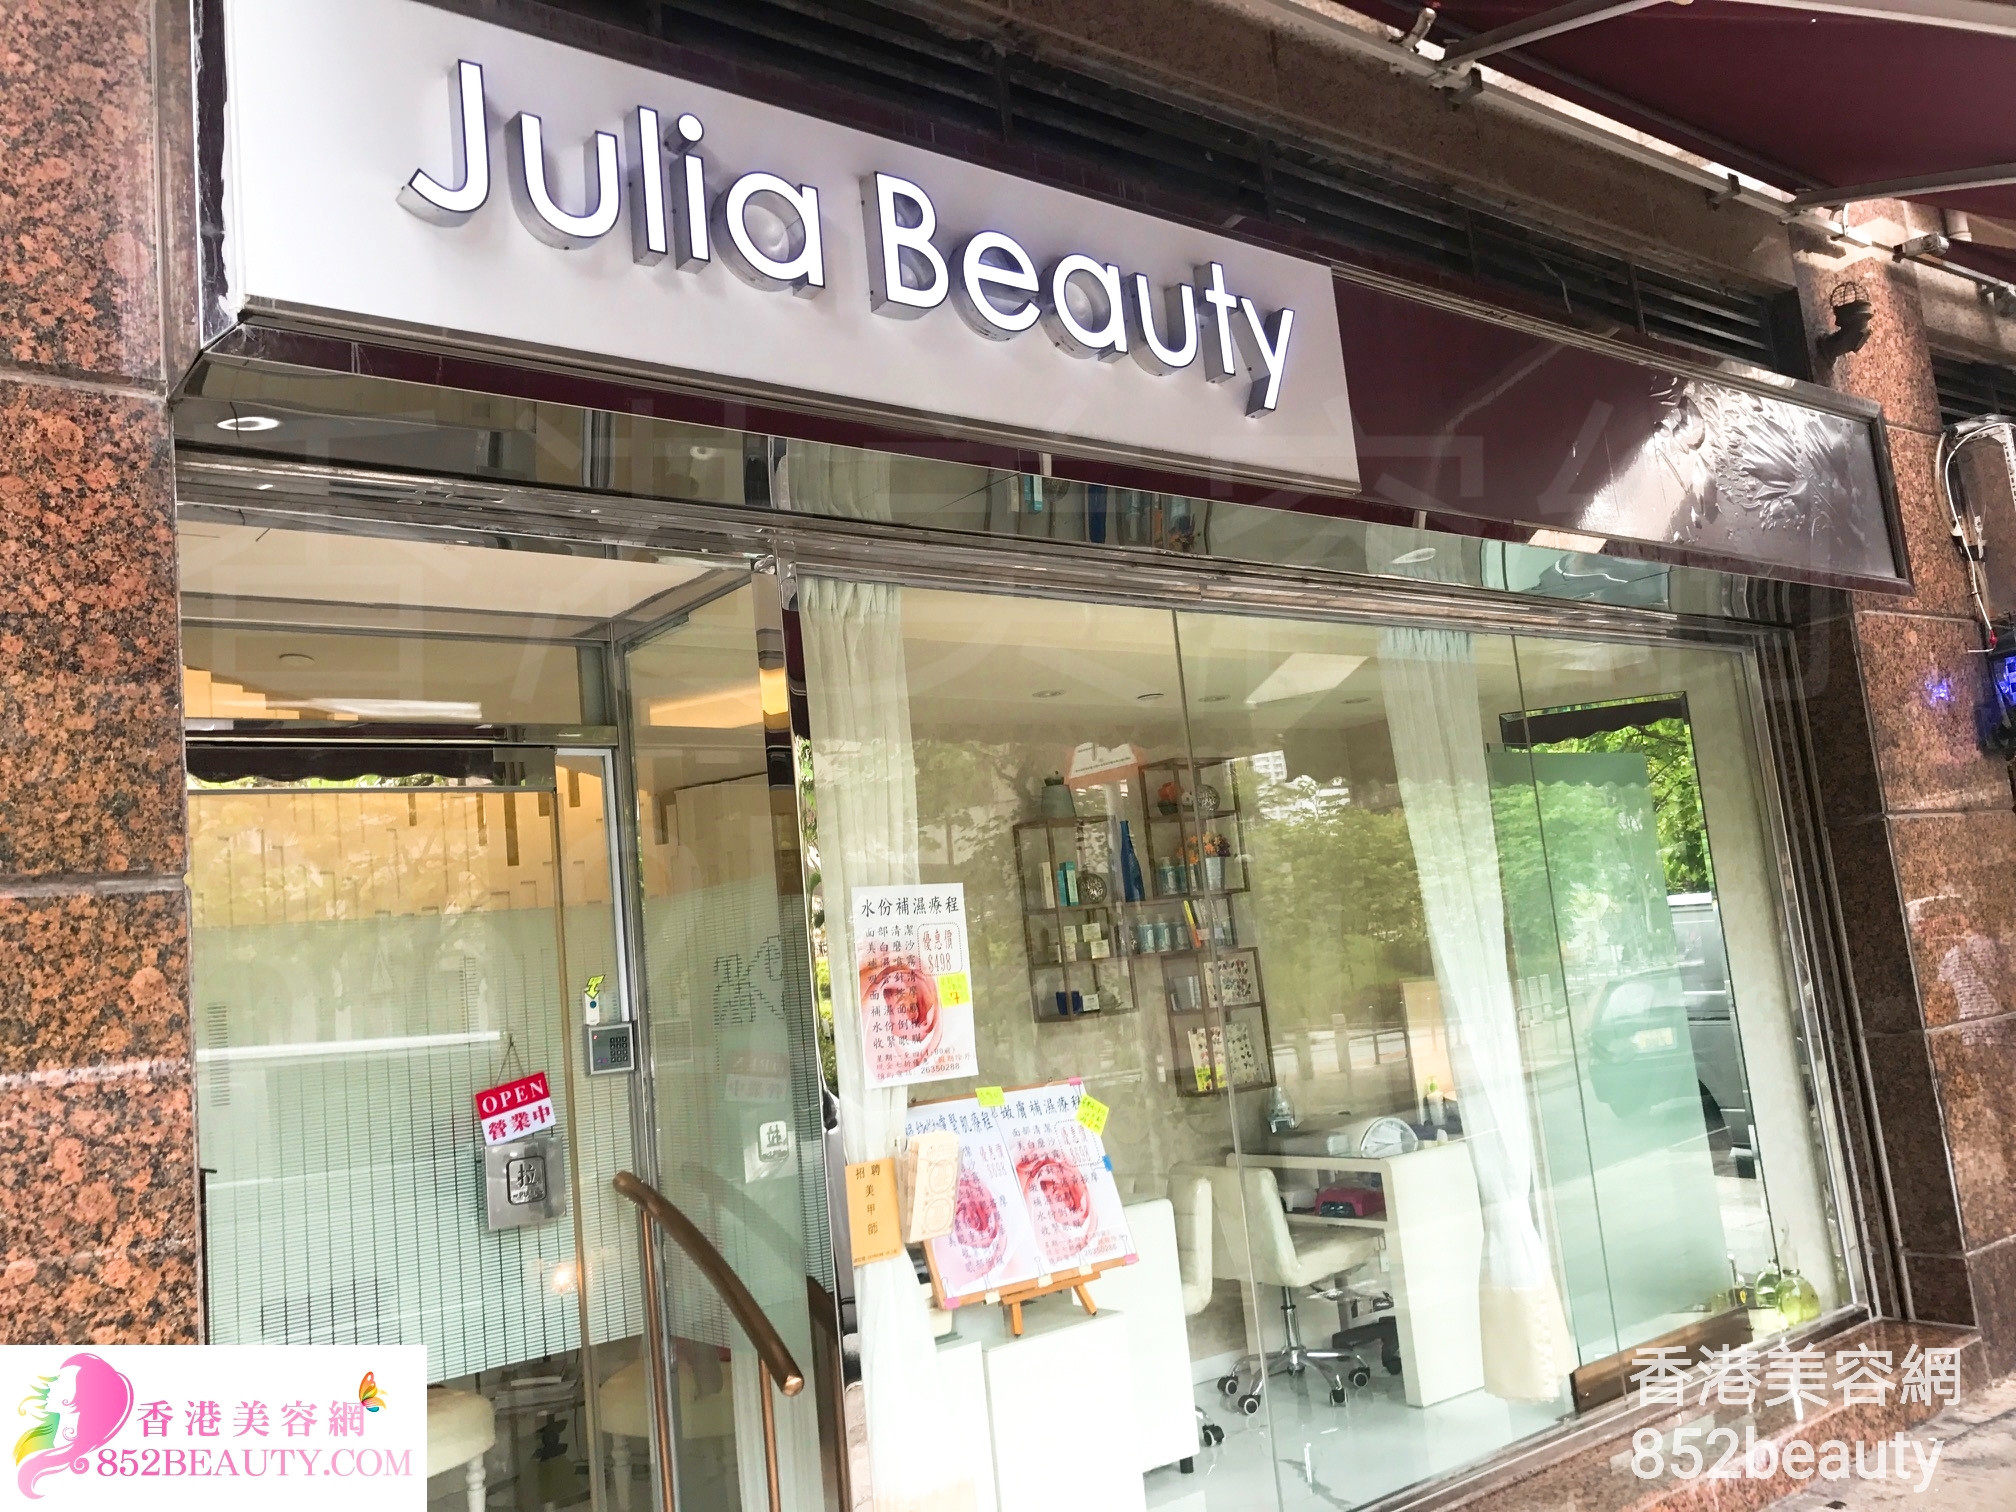 面部护理: Julia Beauty